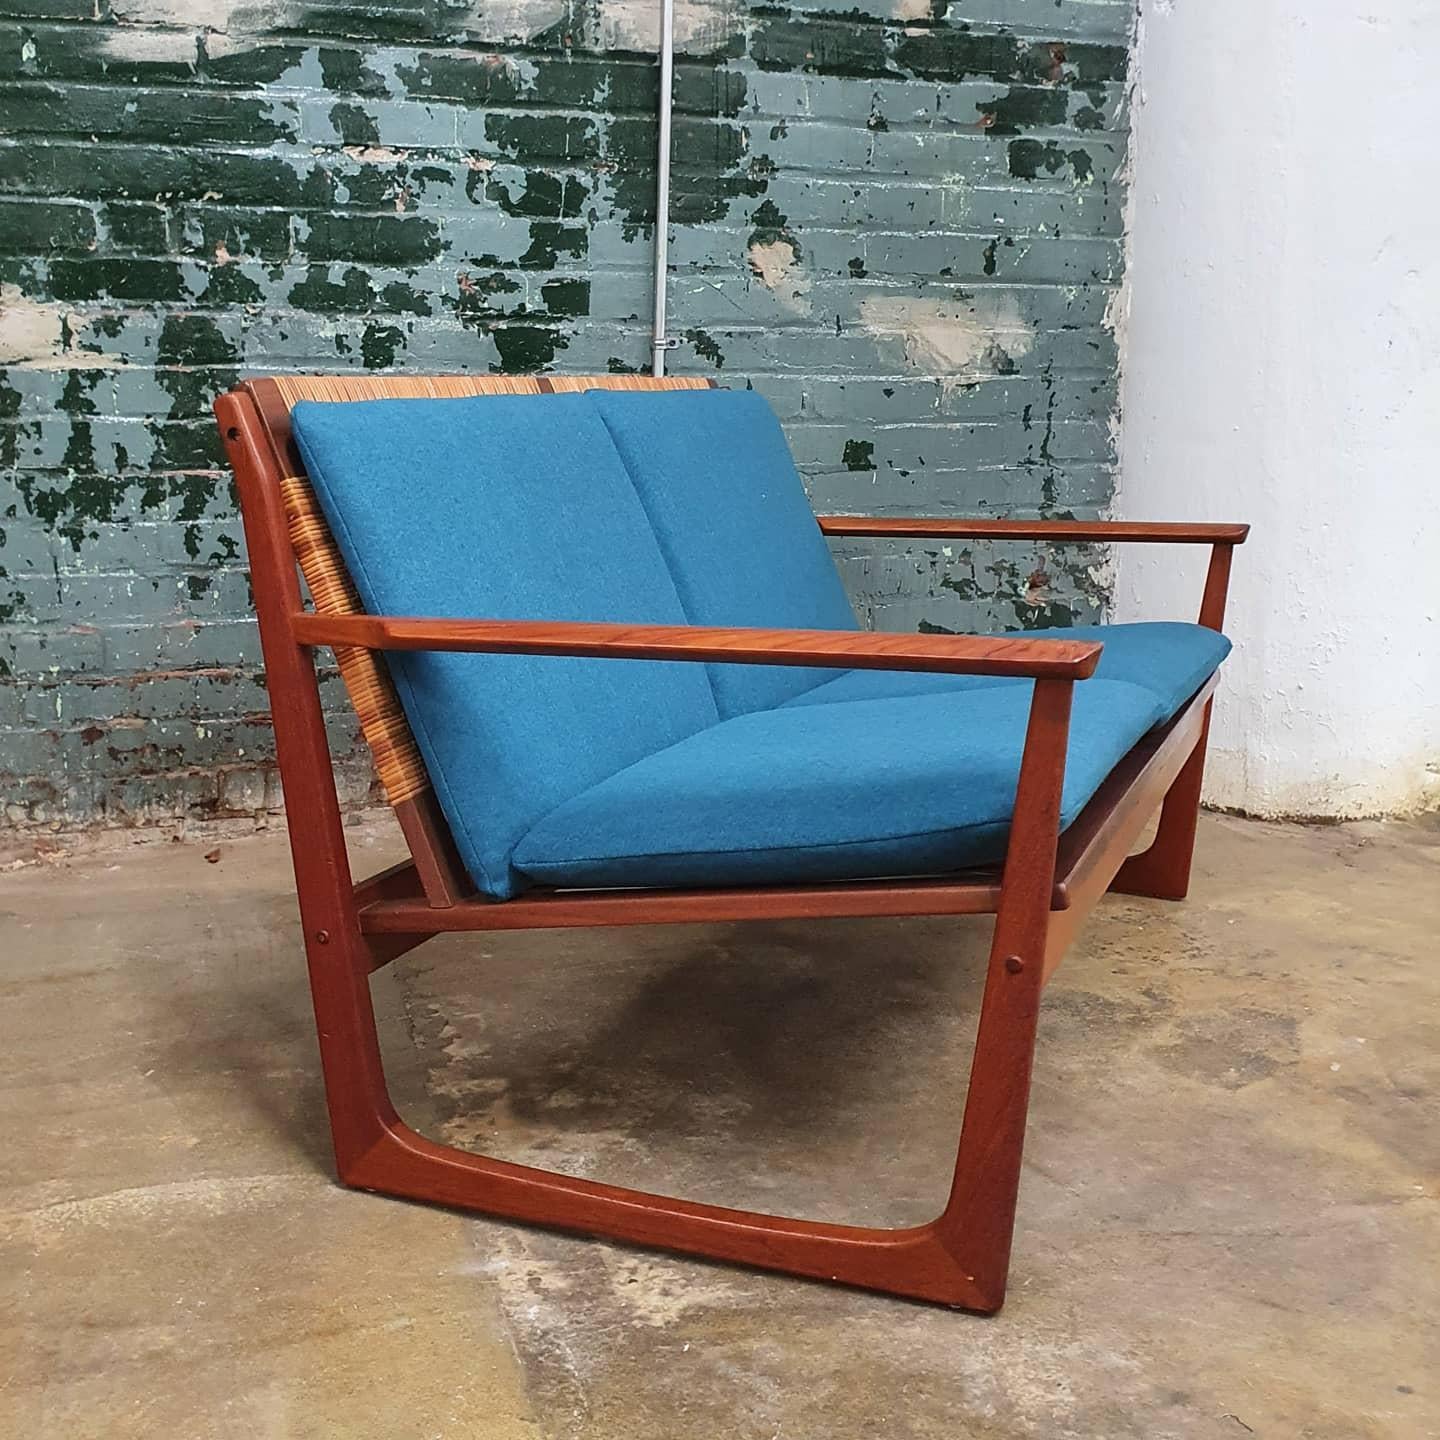 Magnifique canapé en teck danois de Hans Olsen. Nouvelle tapisserie en laine sarcelle. les cordes du siège ont été remplacées. dossier de siège en canne nouvellement tissé par un canneur professionnel. Cette chaise est une pièce confortable qui